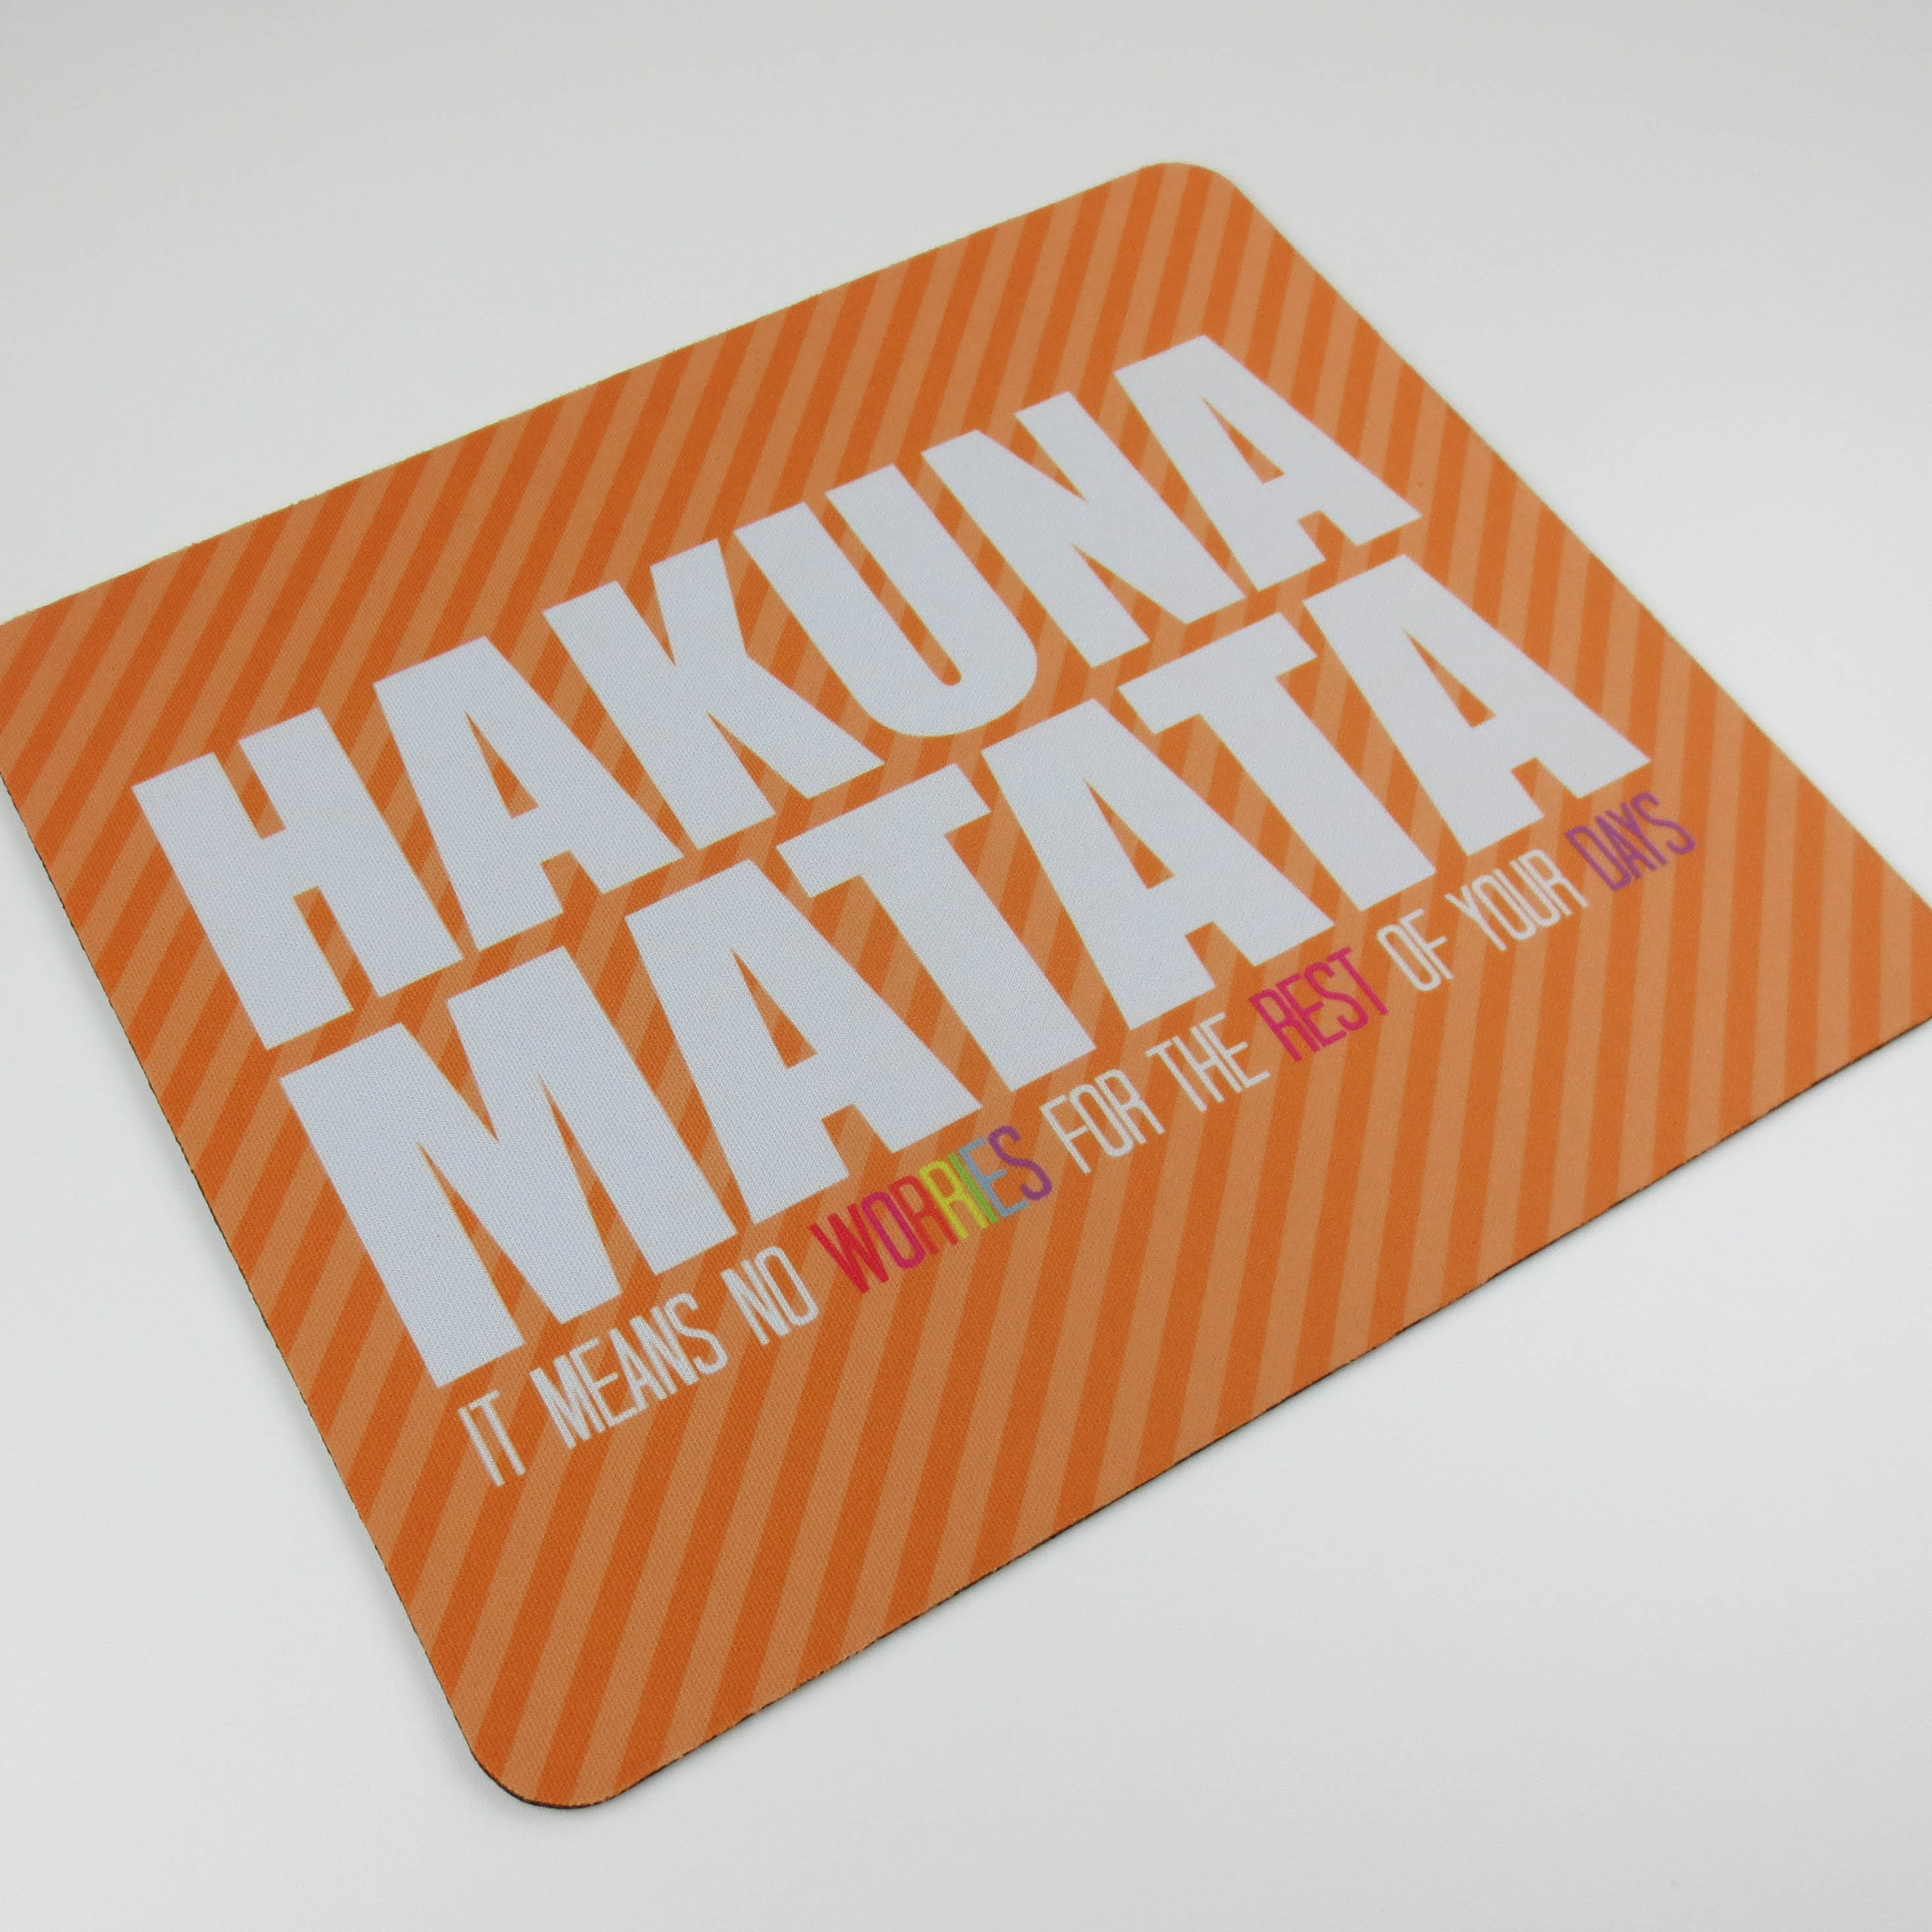 Hakuna Matata made with sublimation printing